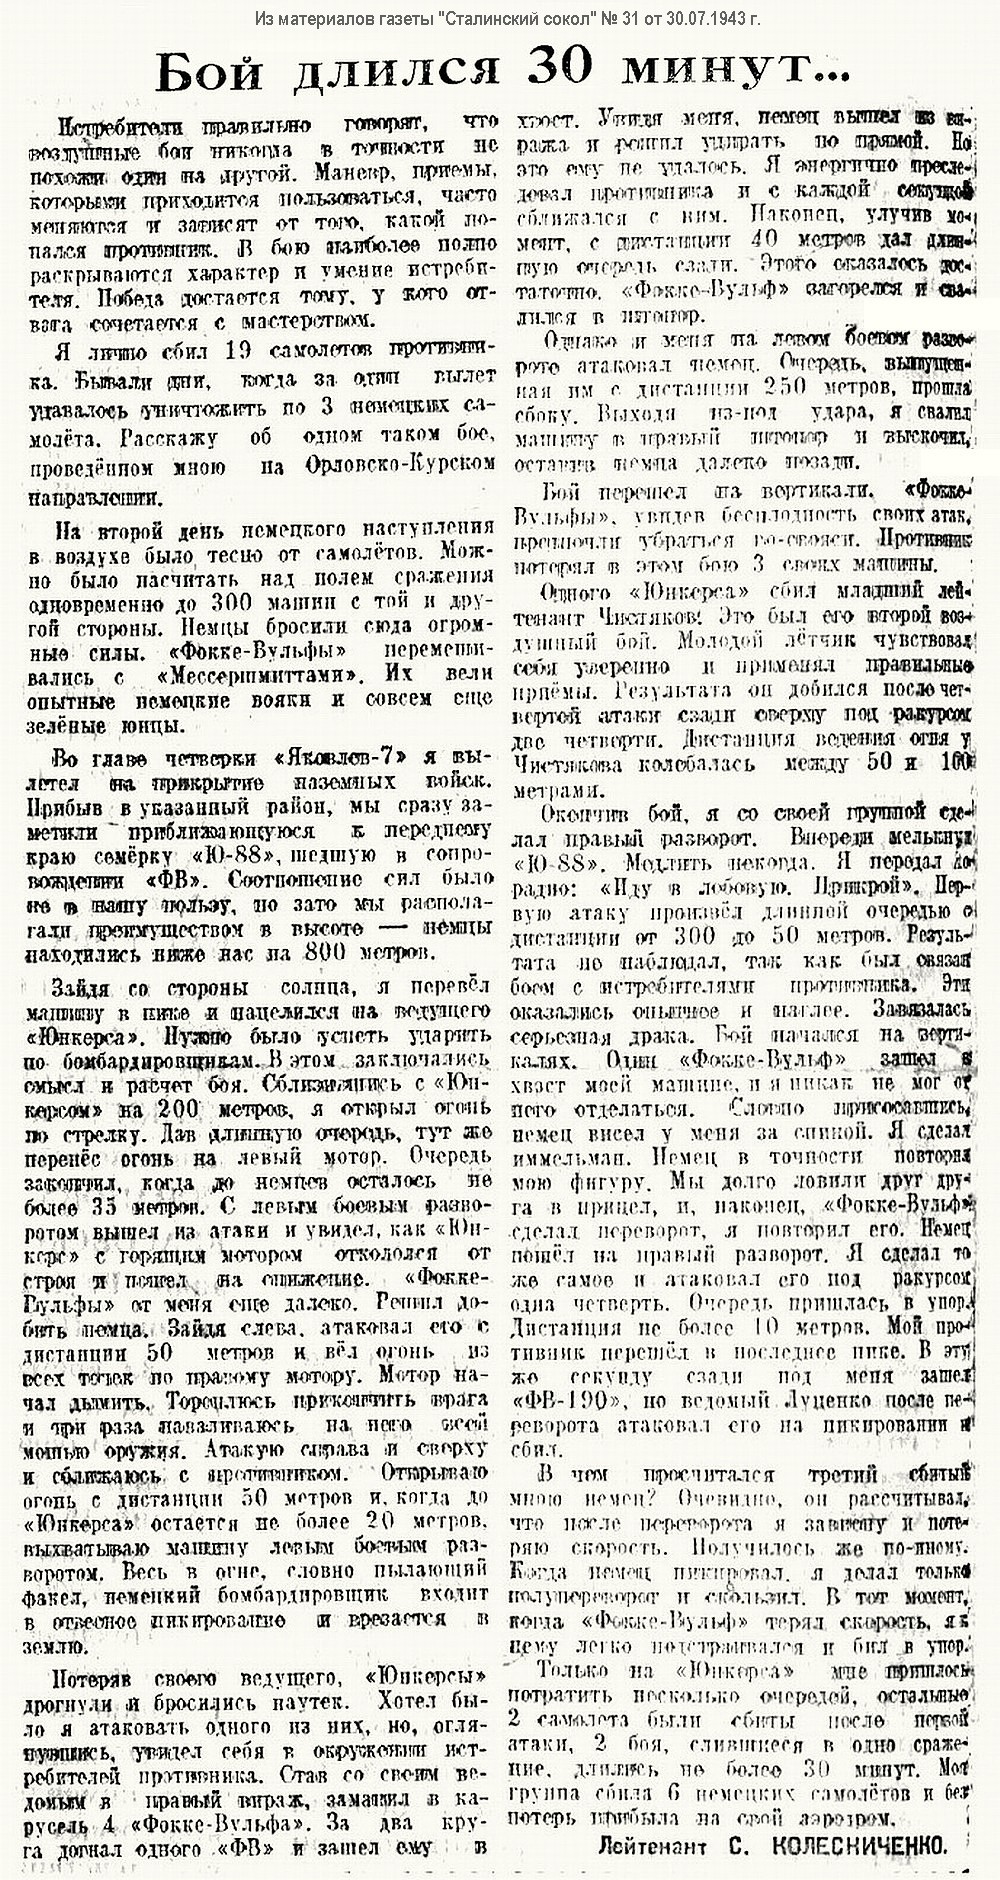 Колесниченко Степан Калинович, заметка в газете 1943 г.